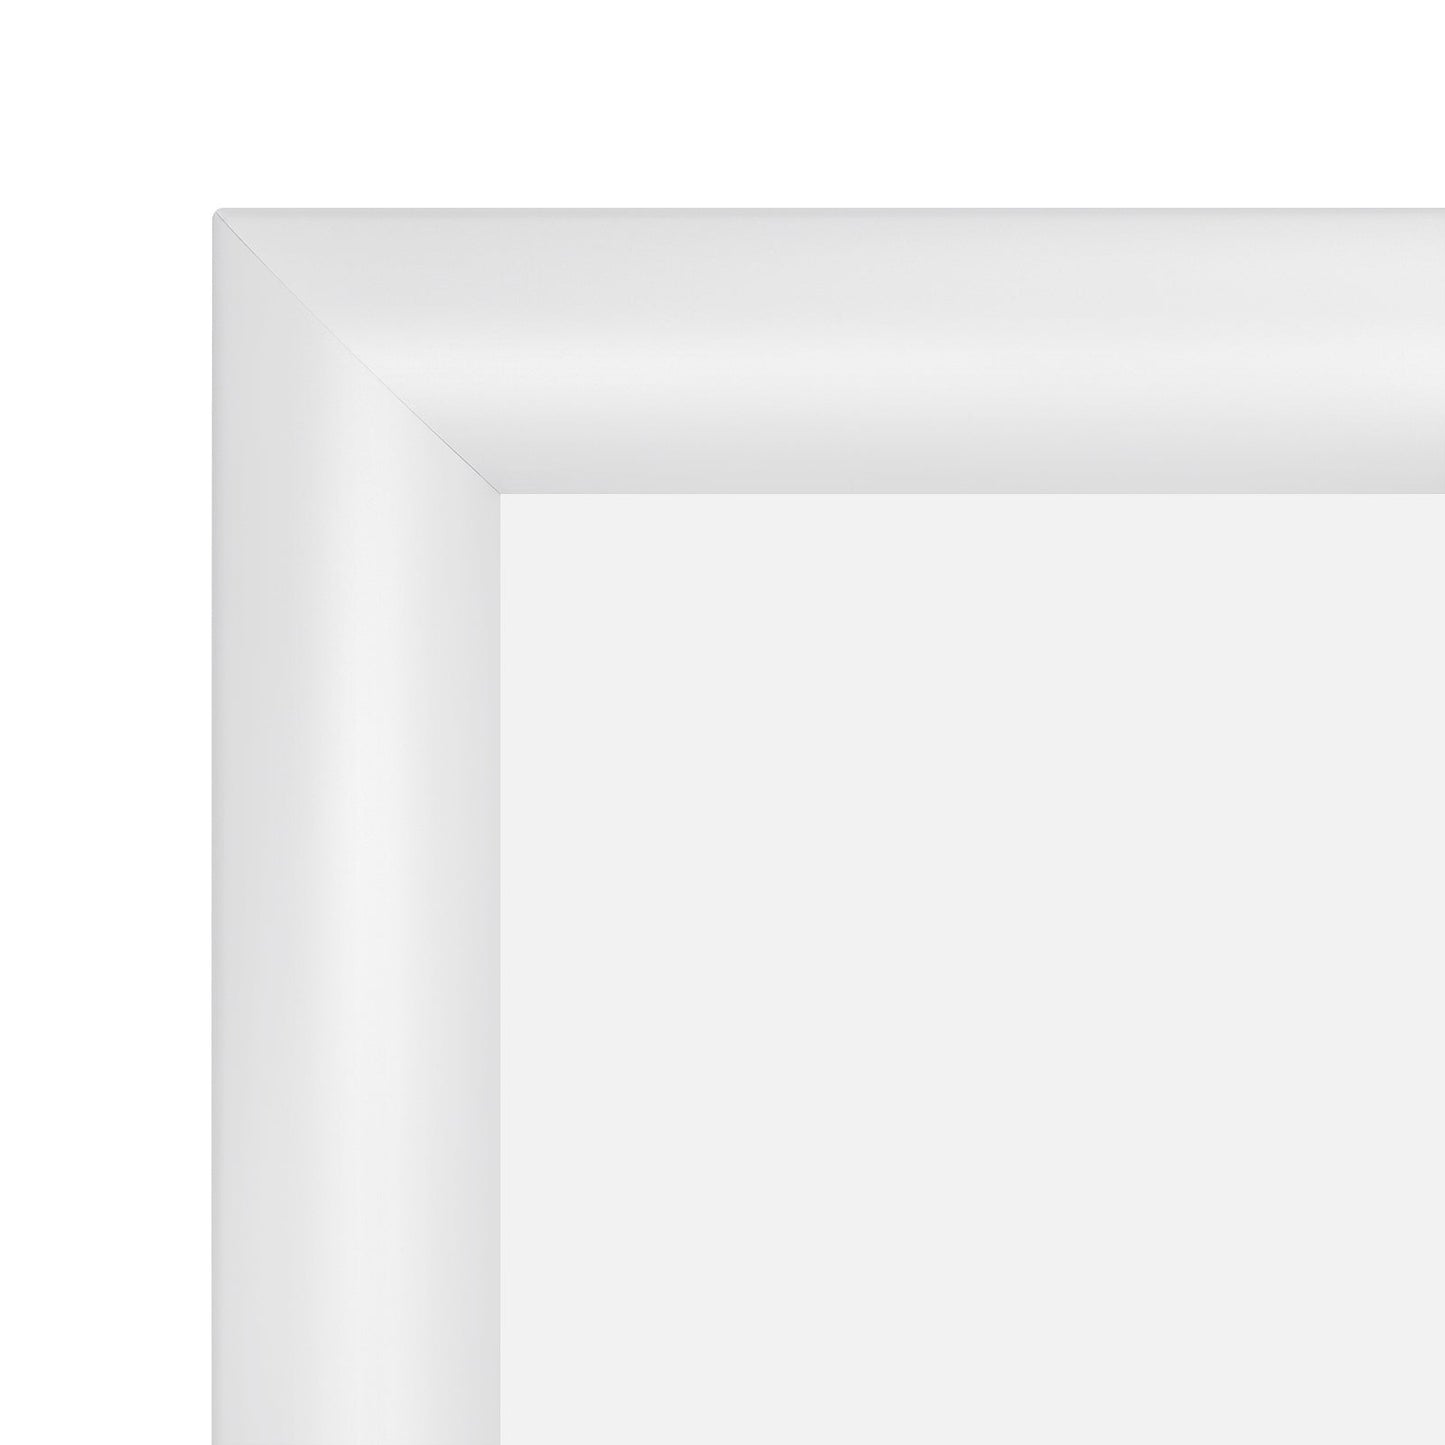 22x28 White SnapeZo® Snap Frame - 1.2" Profile